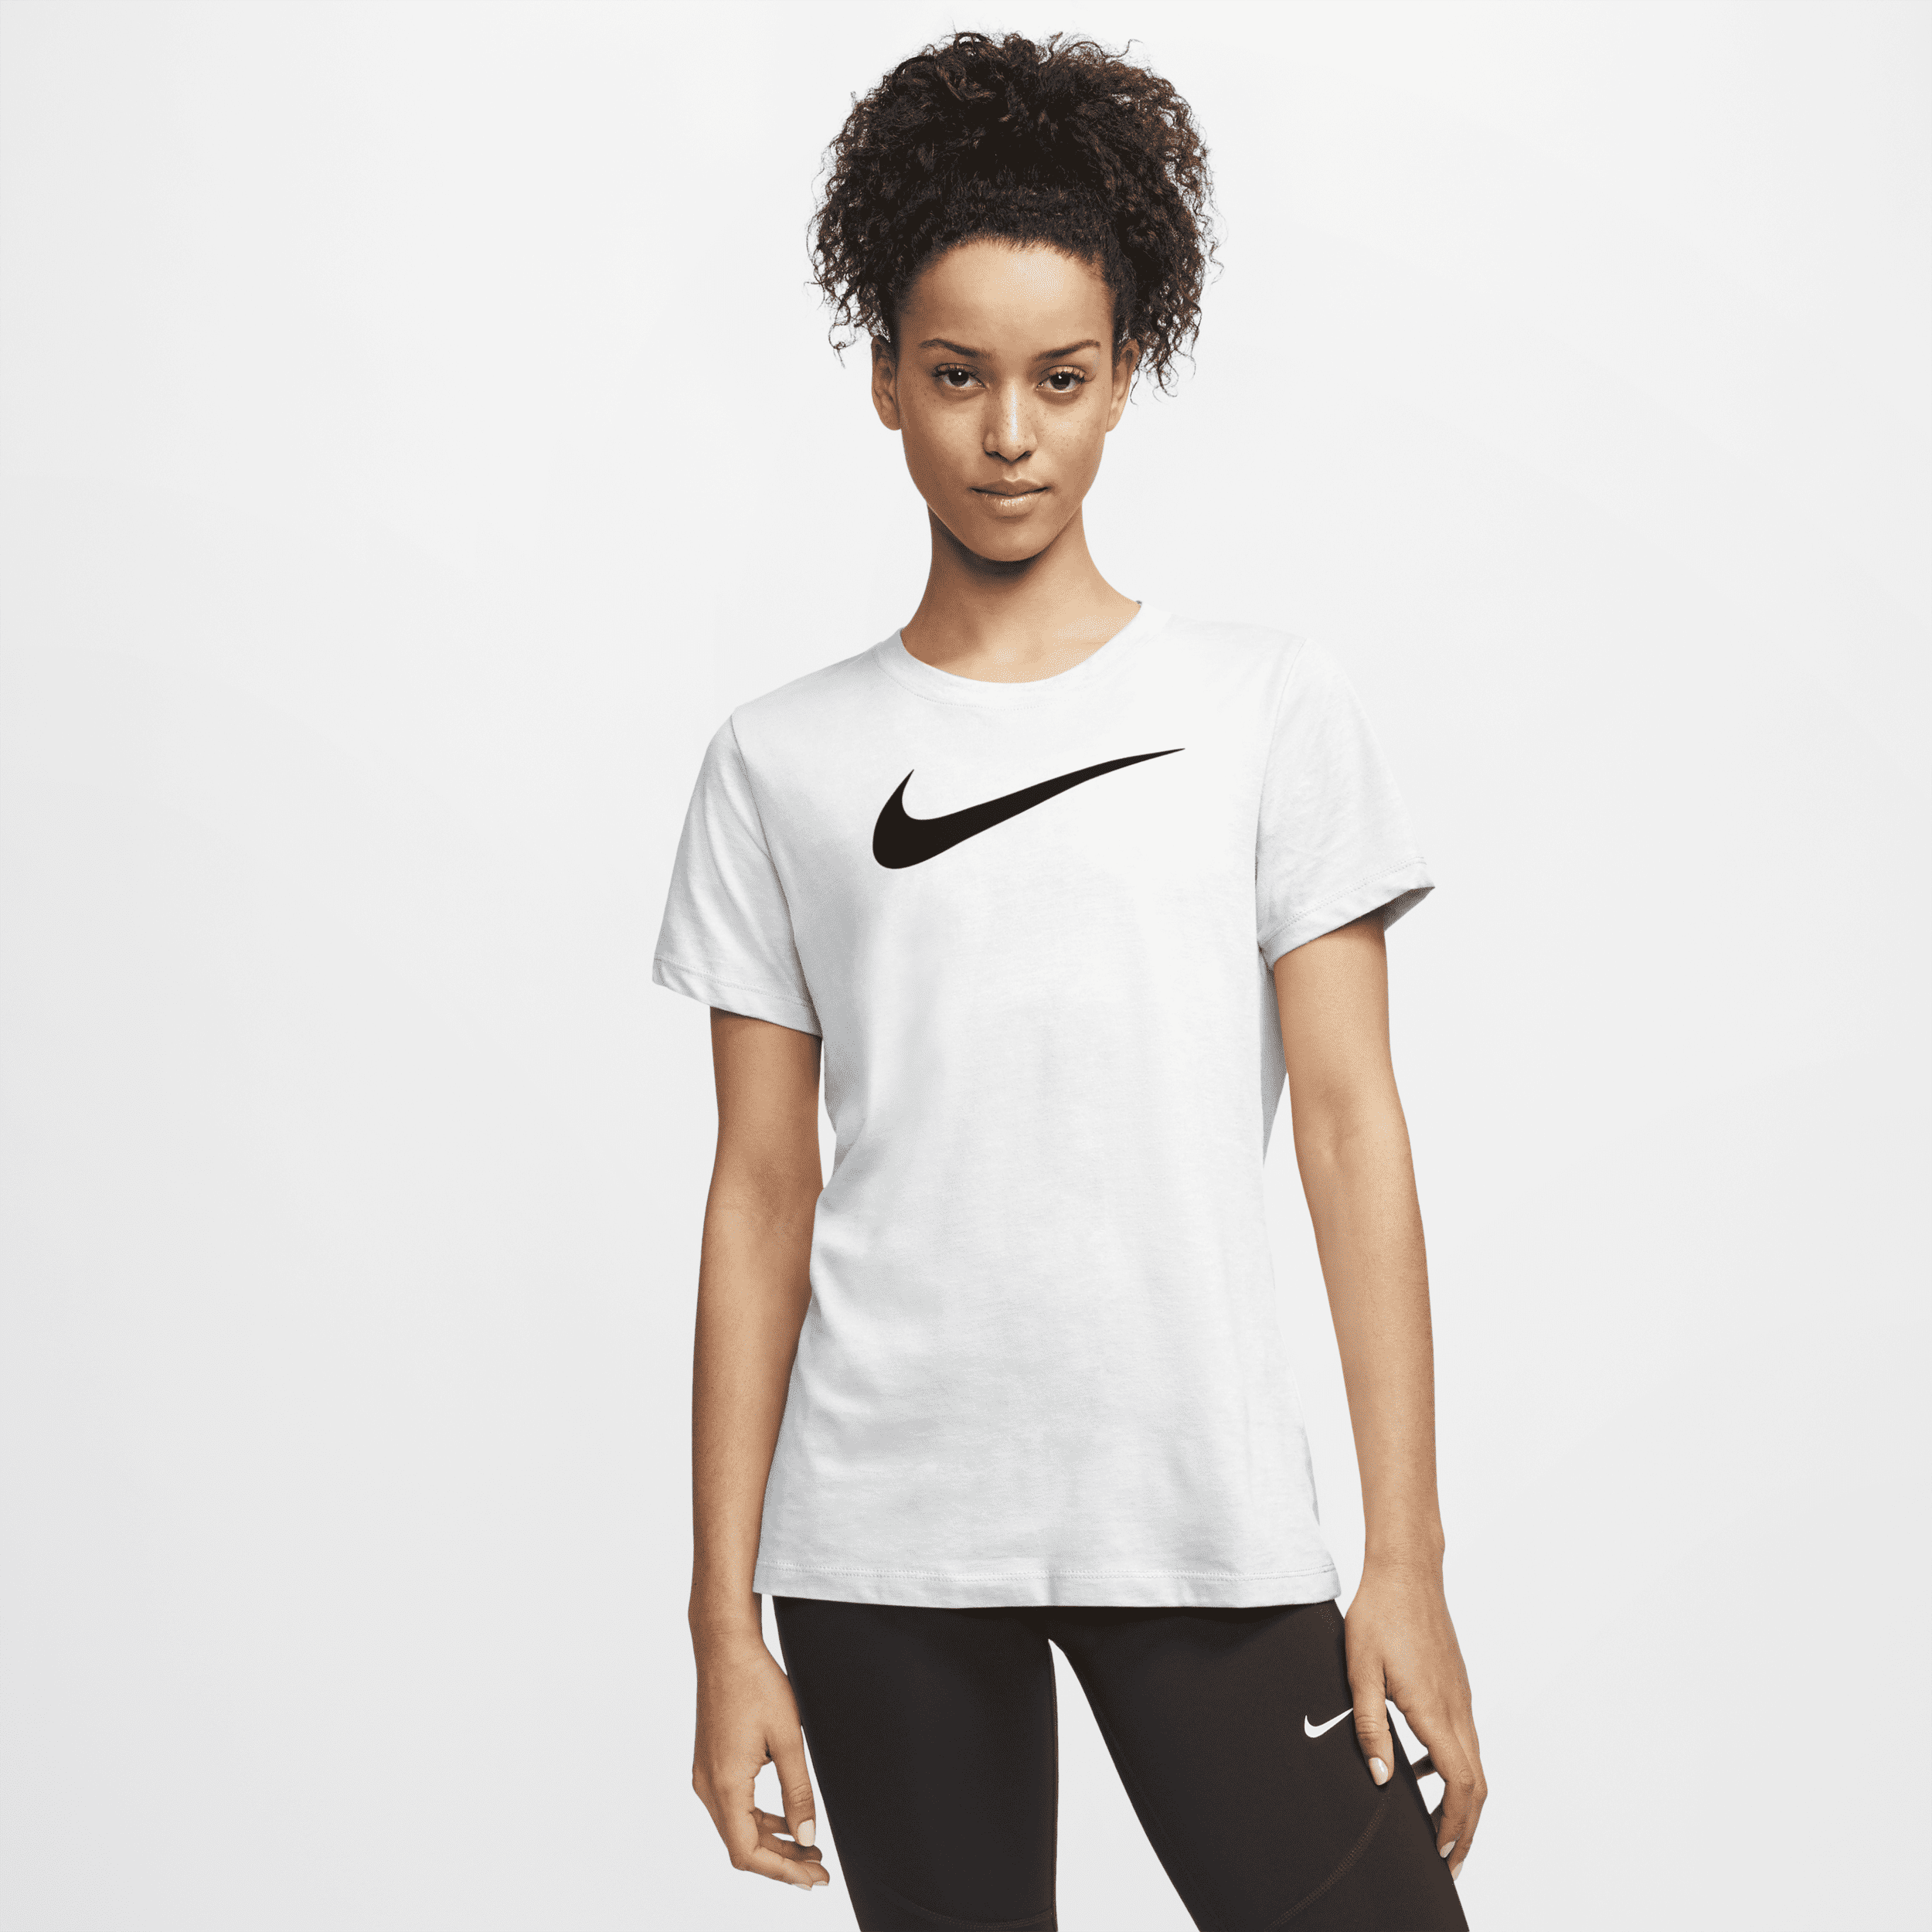 Damski T-shirt treningowy Nike Dri-FIT - Biel